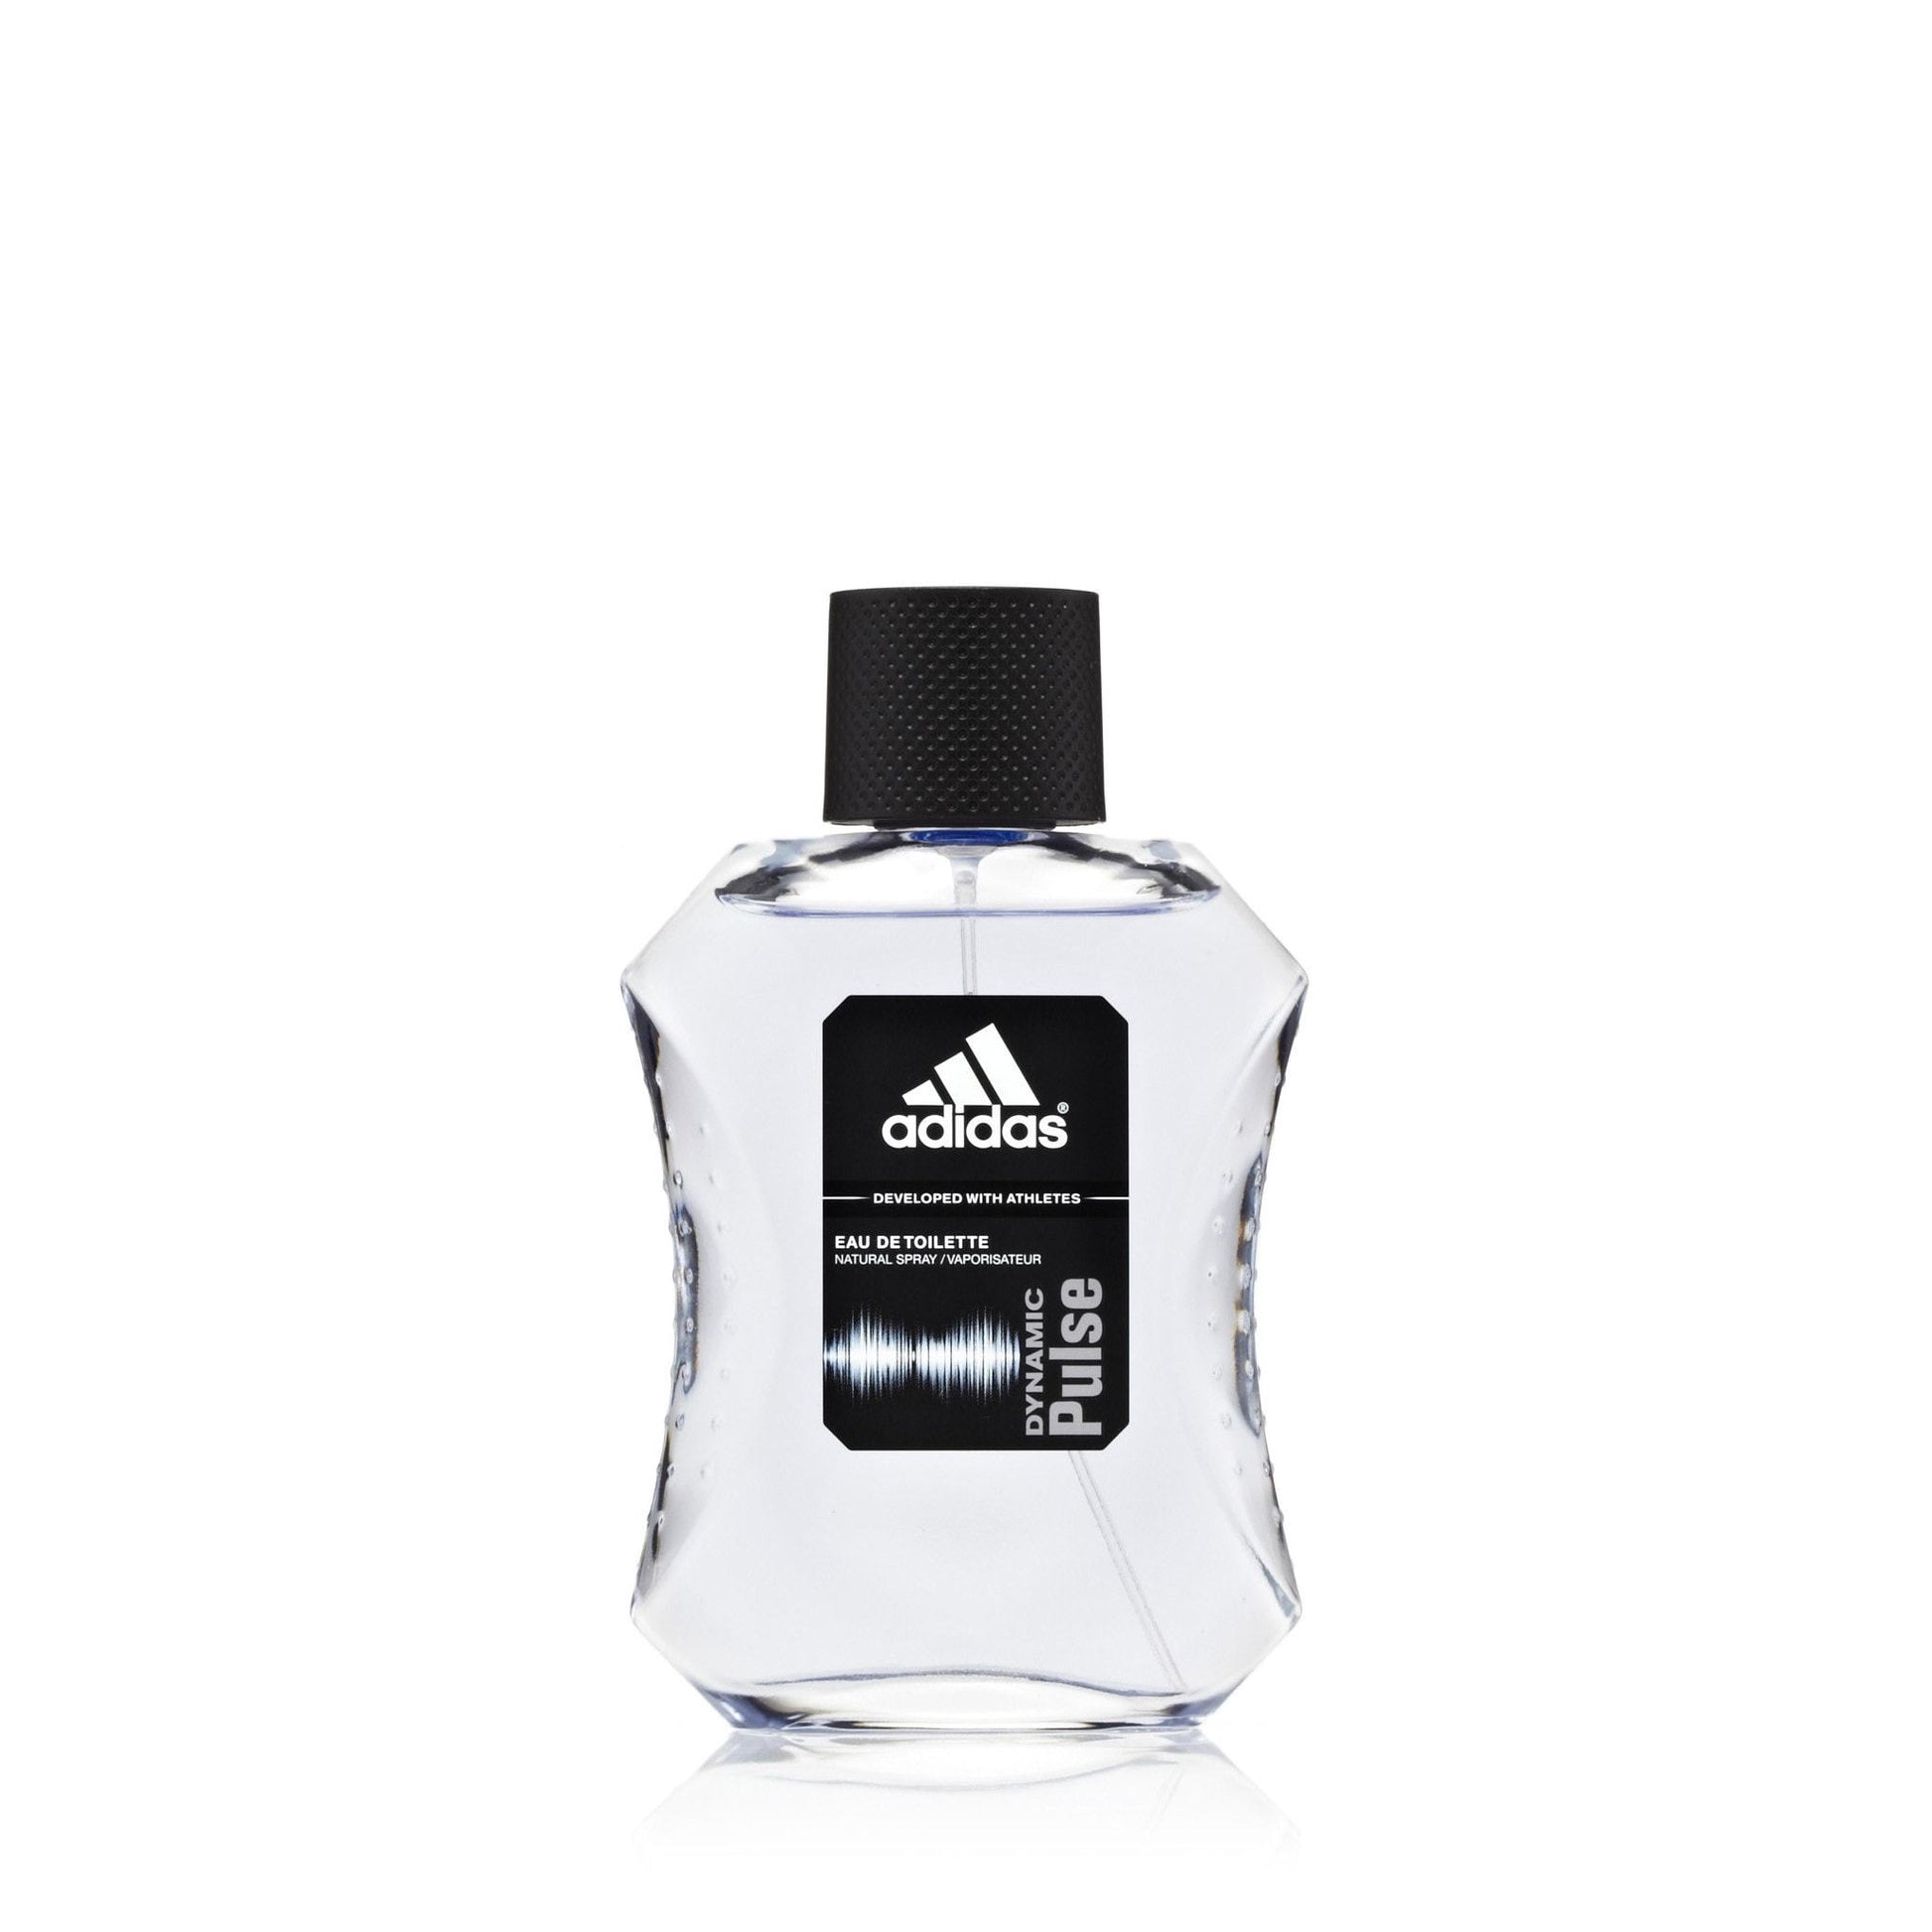 Dynamic Pulse Eau de Toilette Spray for Men by Adidas, Product image 1